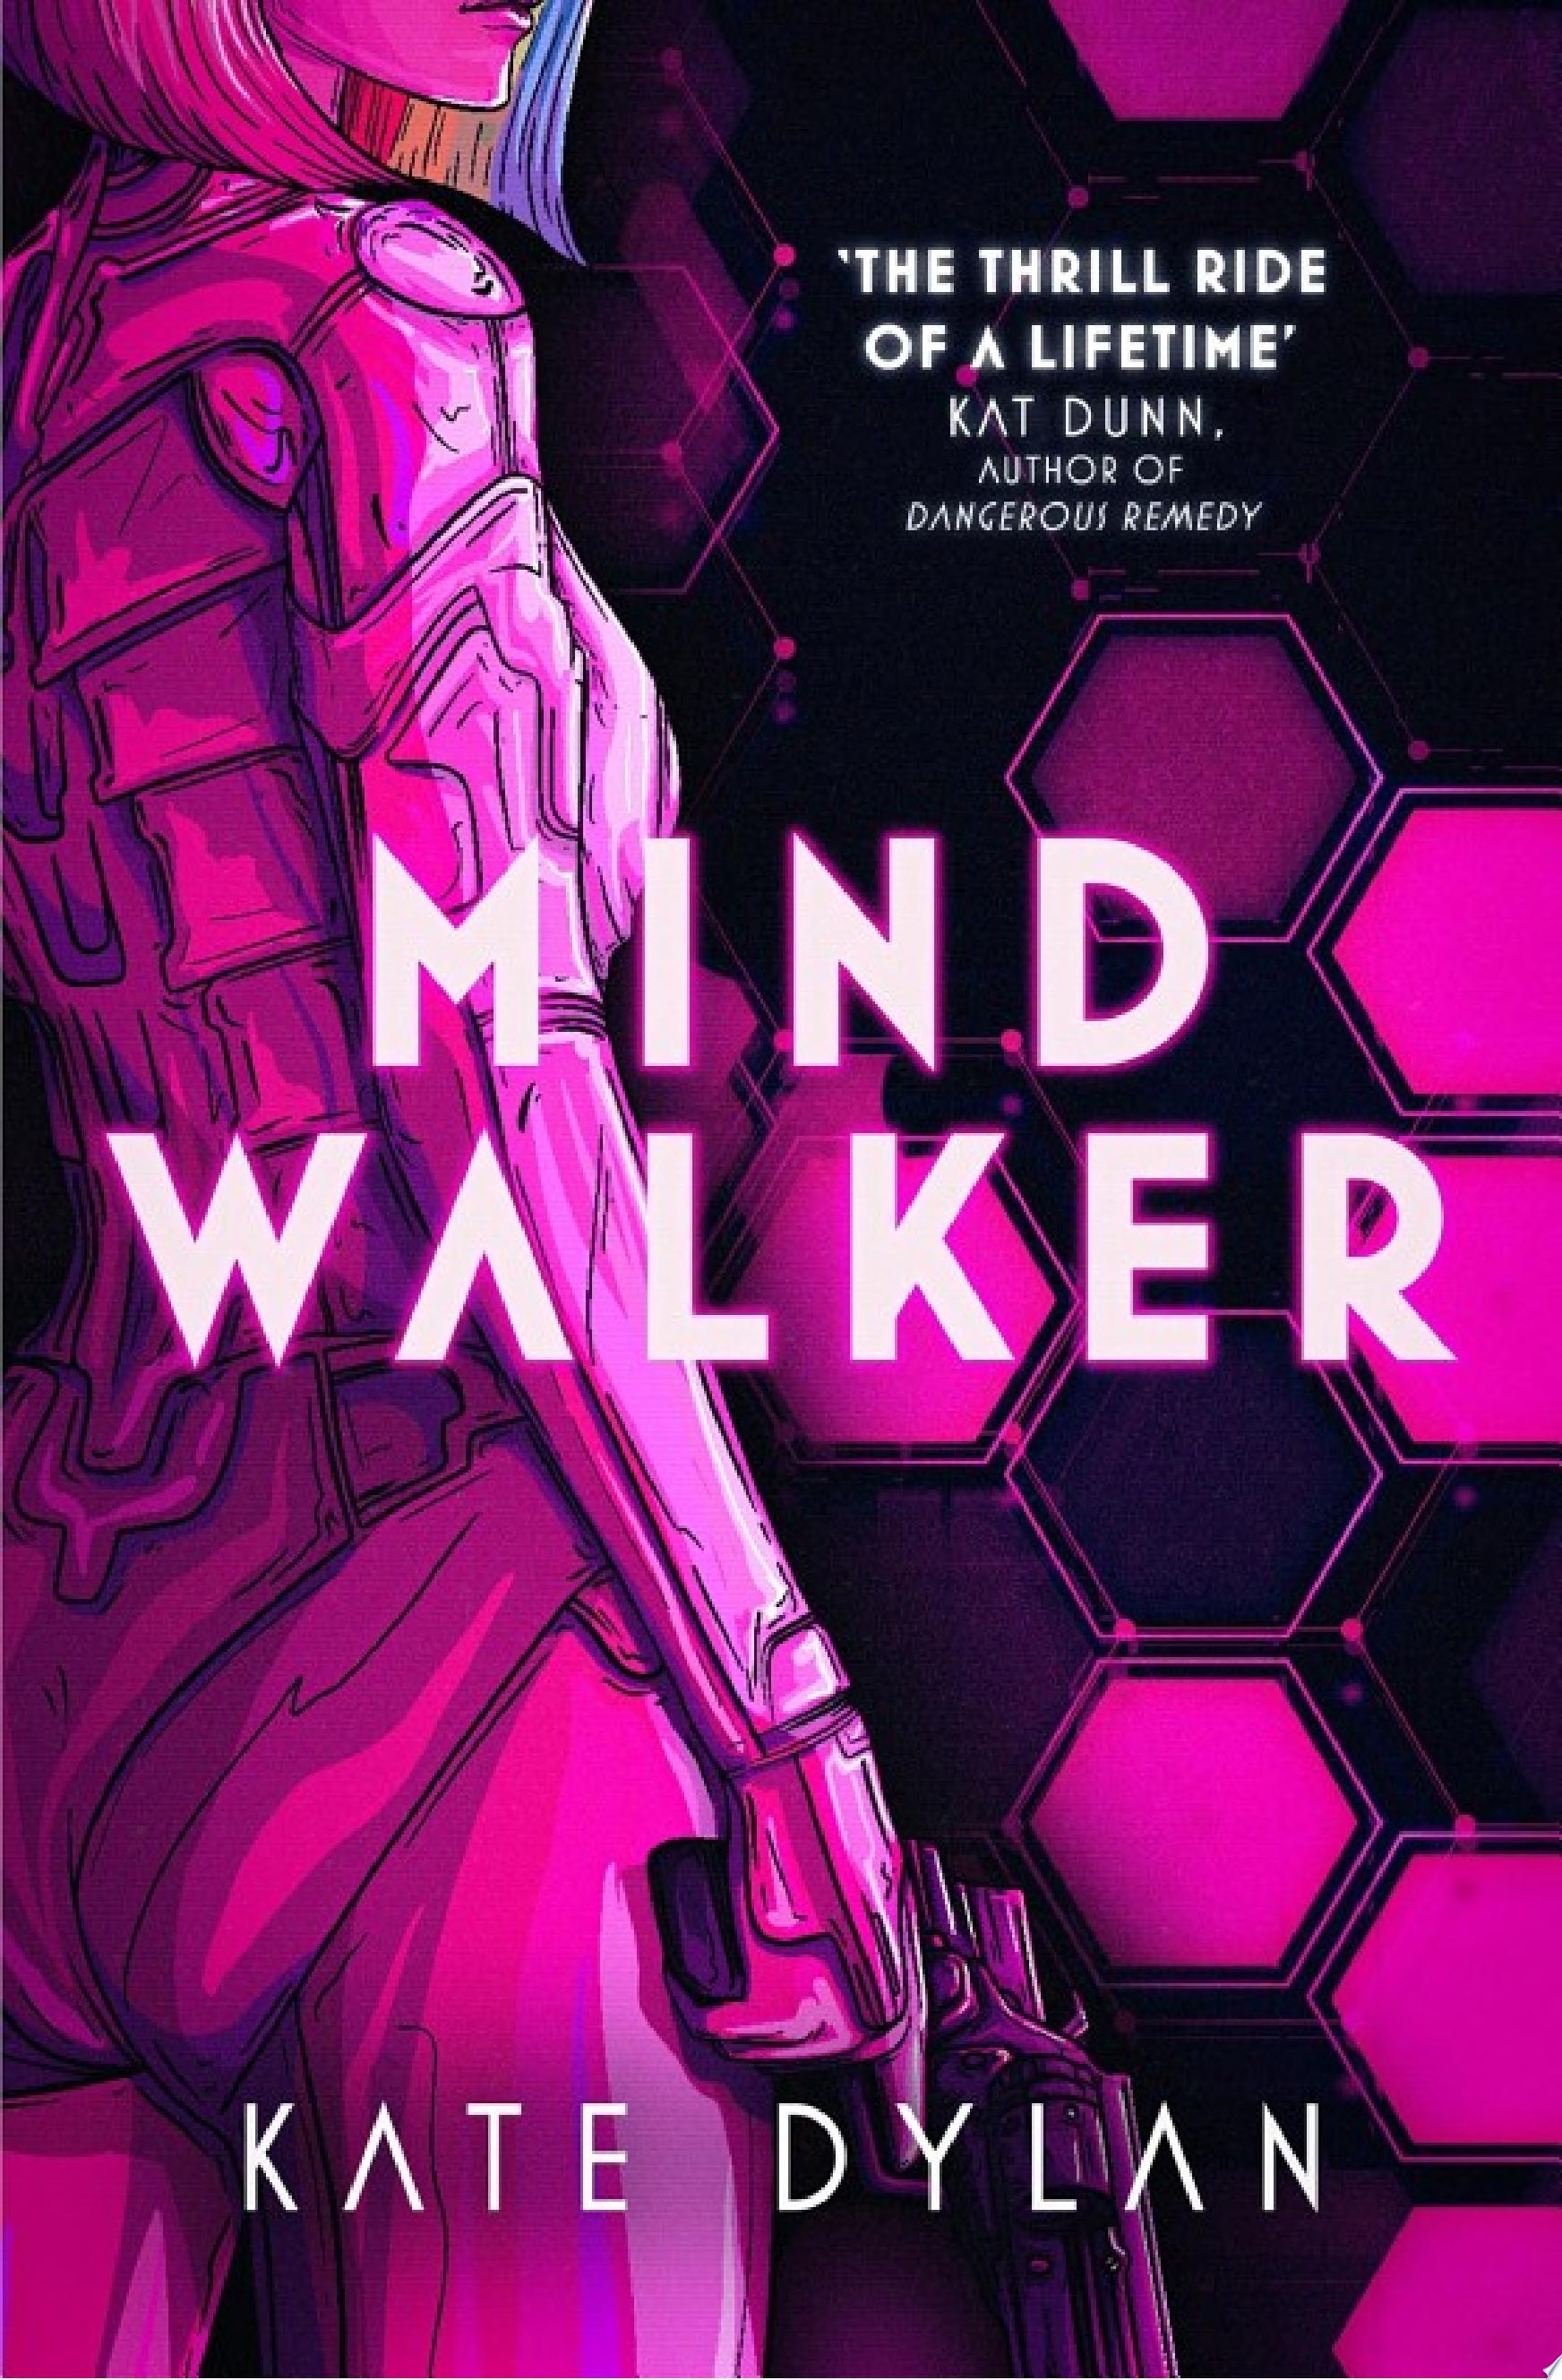 Image for "Mindwalker"